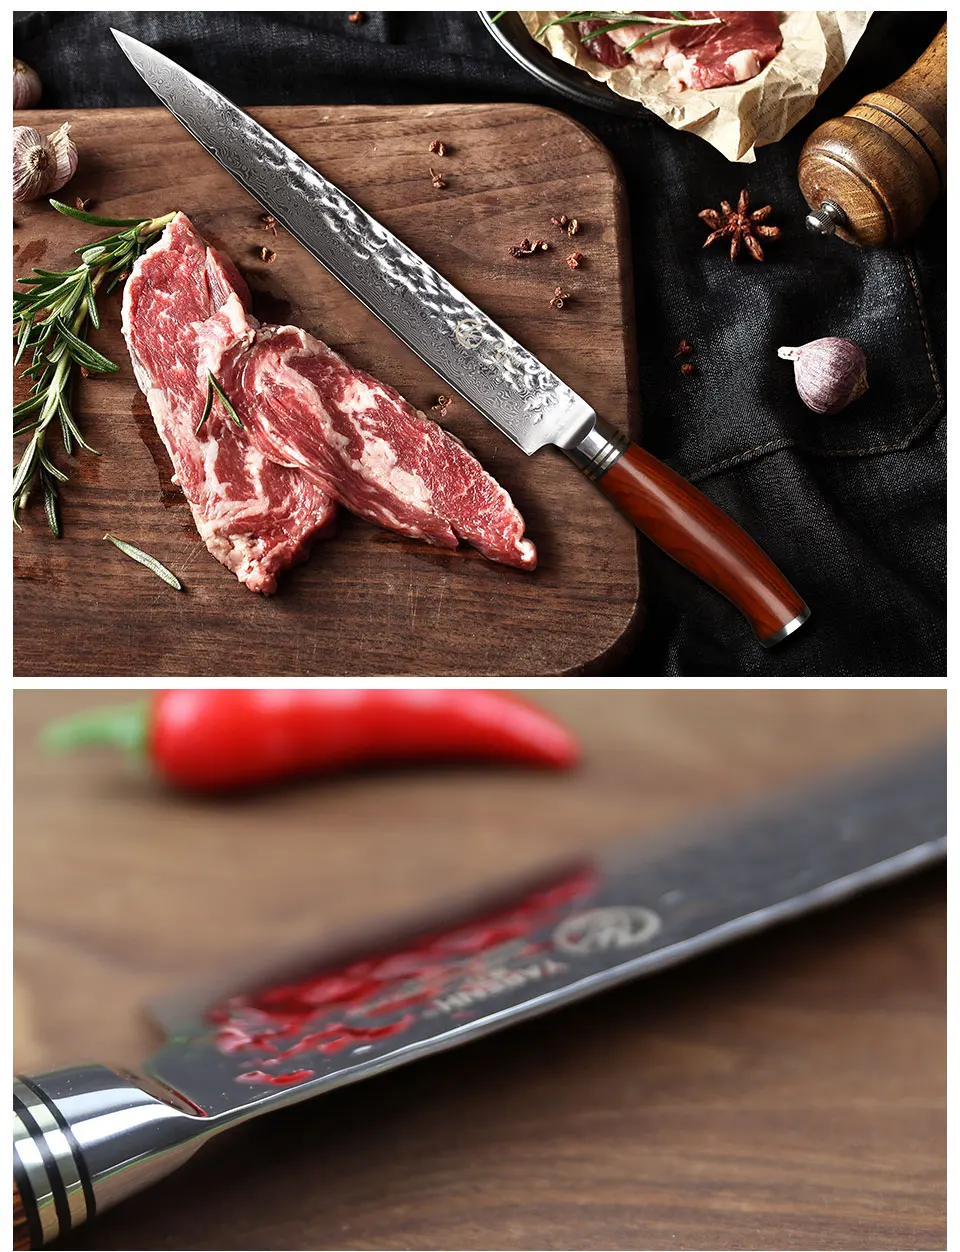 YARENH 10 дюймов нож для нарезки дамасской стали нож с деревянной ручкой японский VG10 профессиональный нож шеф-повара нож сашими